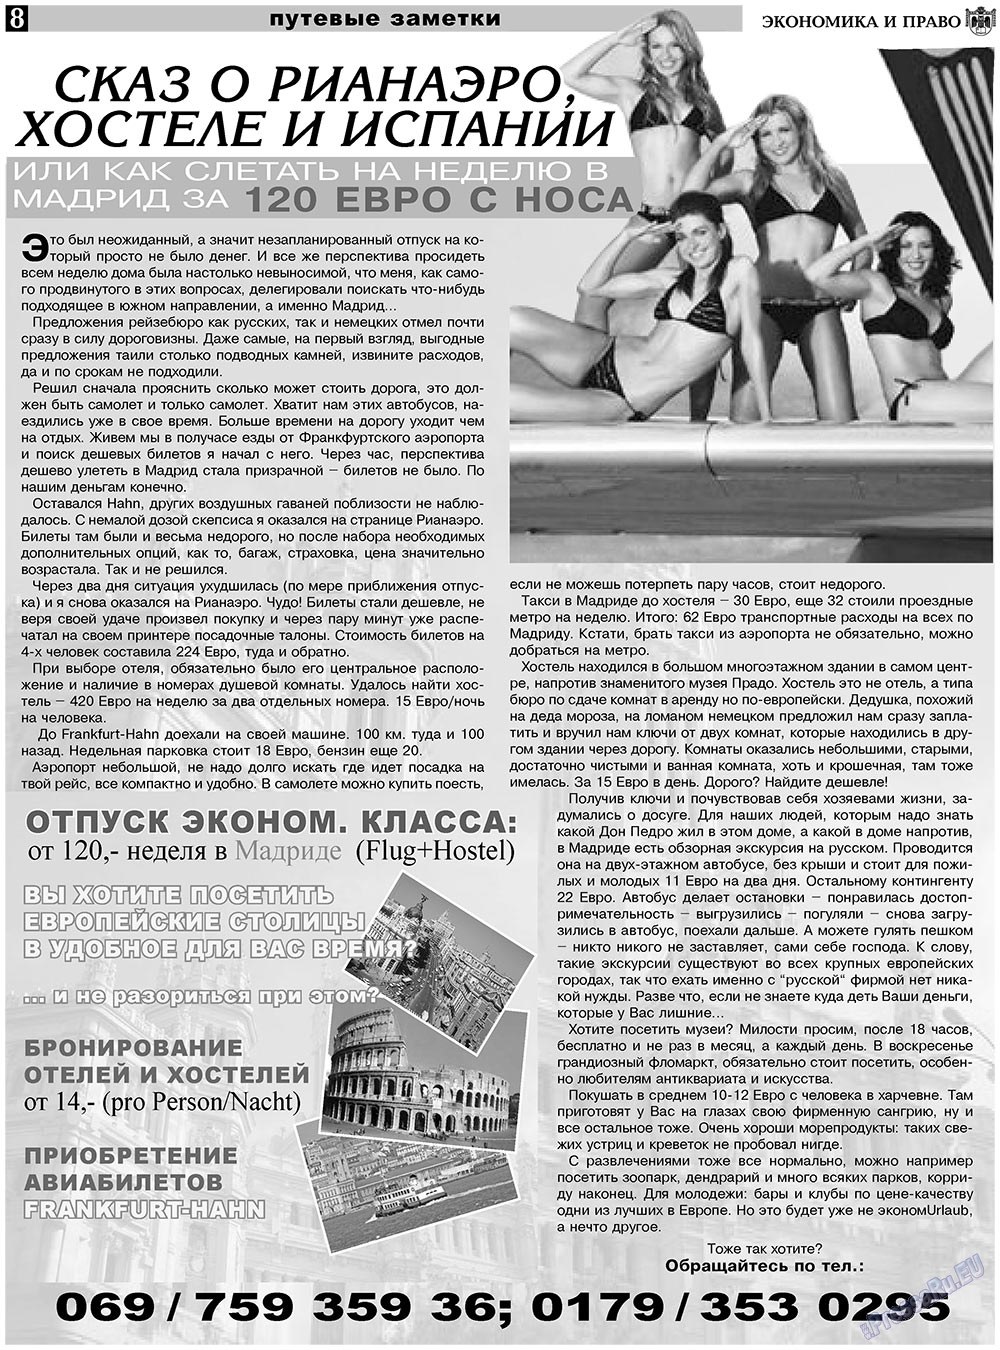 Экономика и право, газета. 2010 №11 стр.8